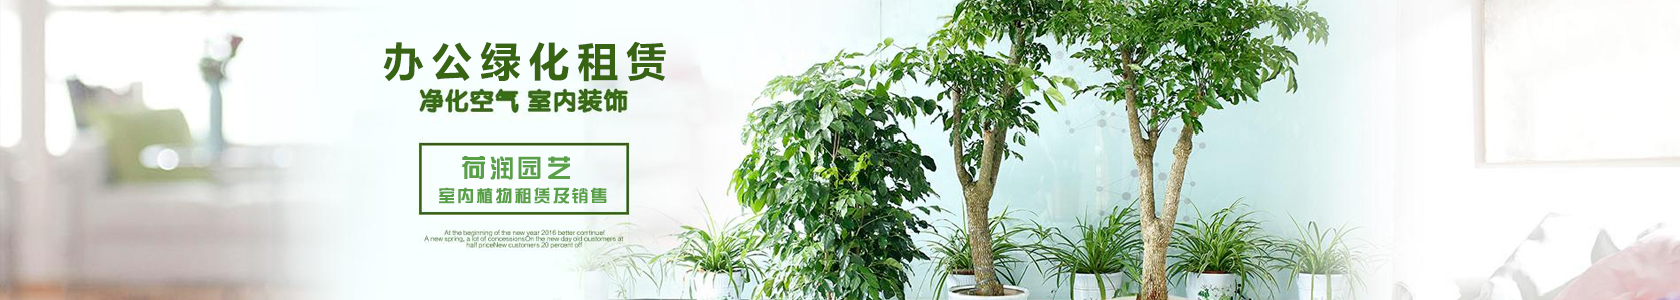 大型植物 高度120-180厘米